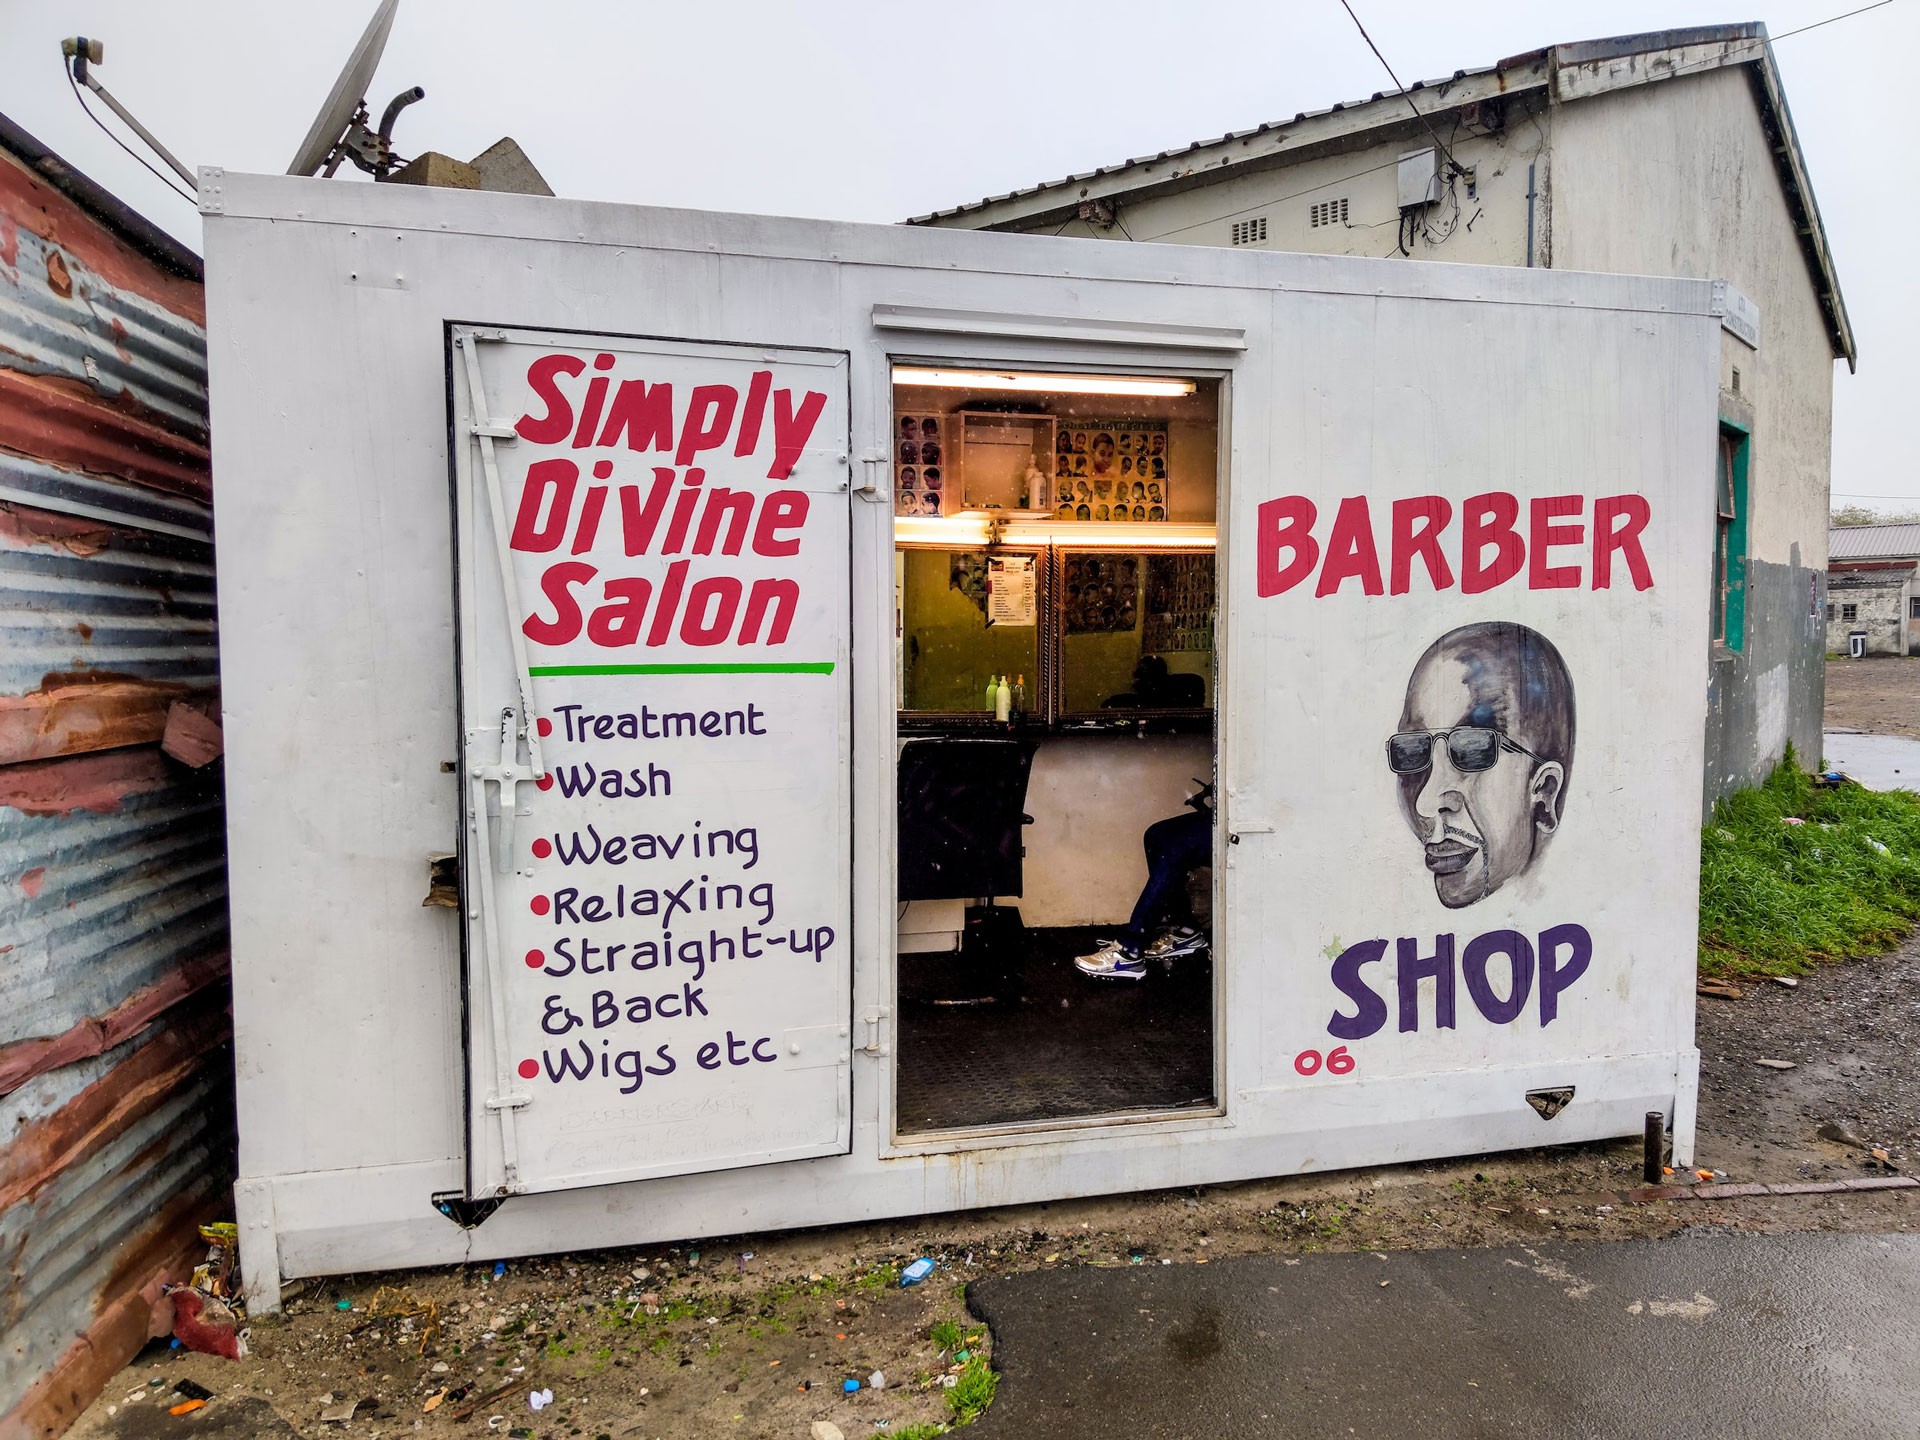 Barber shop sign listing services offered